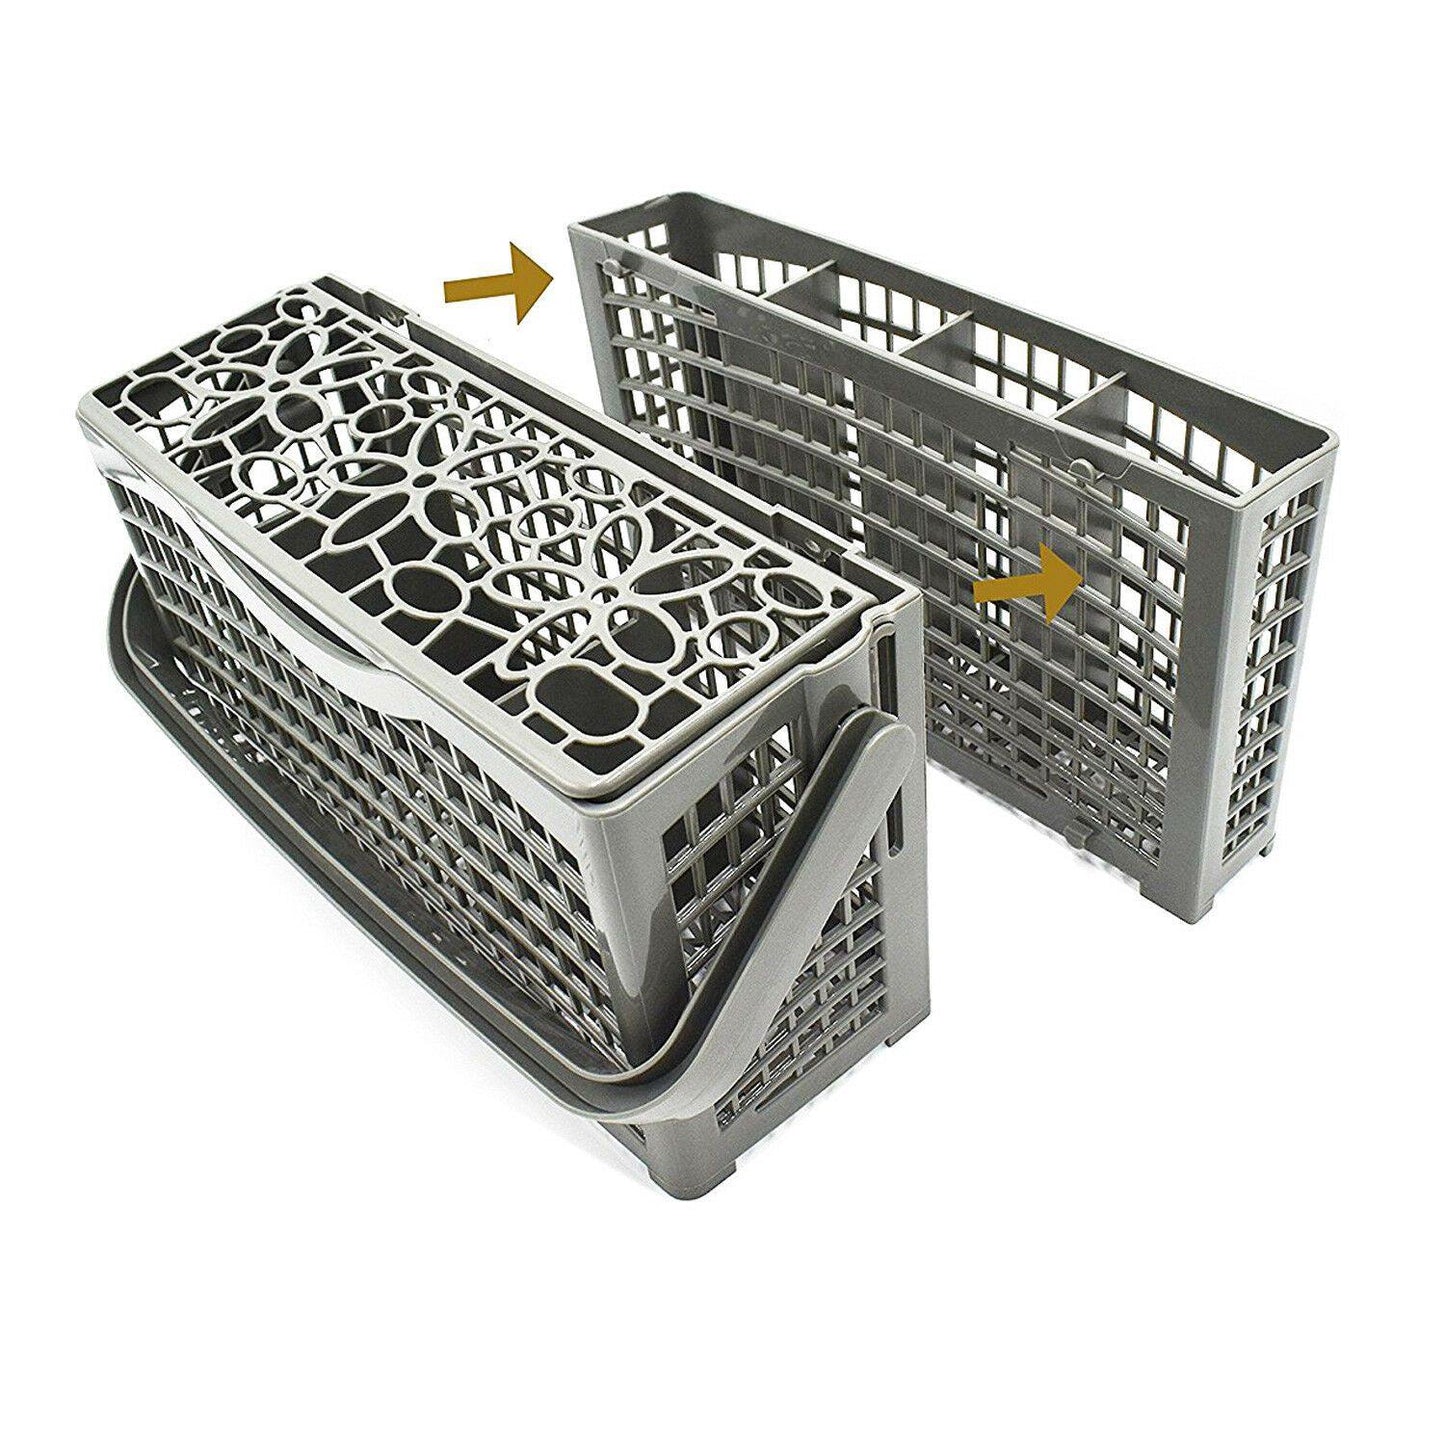 Dishwasher Cutlery Basket For Stirling (Aldi) DW9240 W60B2A411B W60A1A401B Sparesbarn